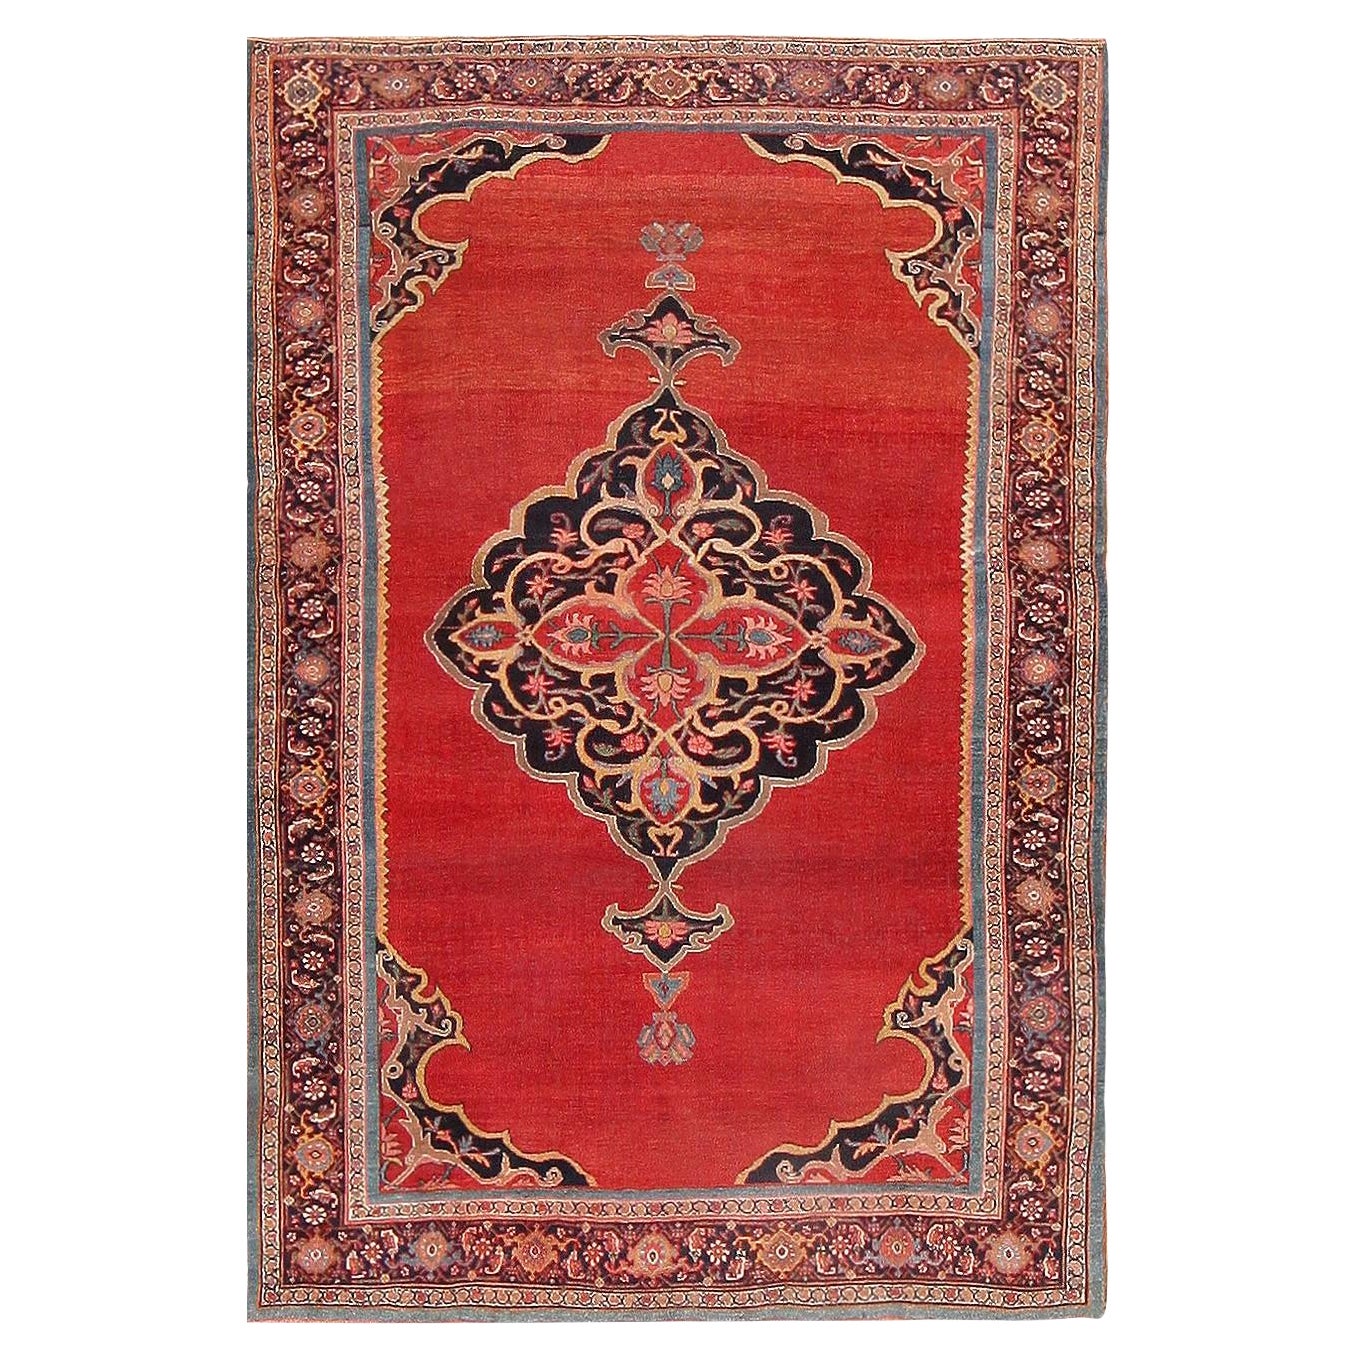 Antique Persian Halvai Bidjar Rug. Size: 4 ft 8 in x 7 ft 